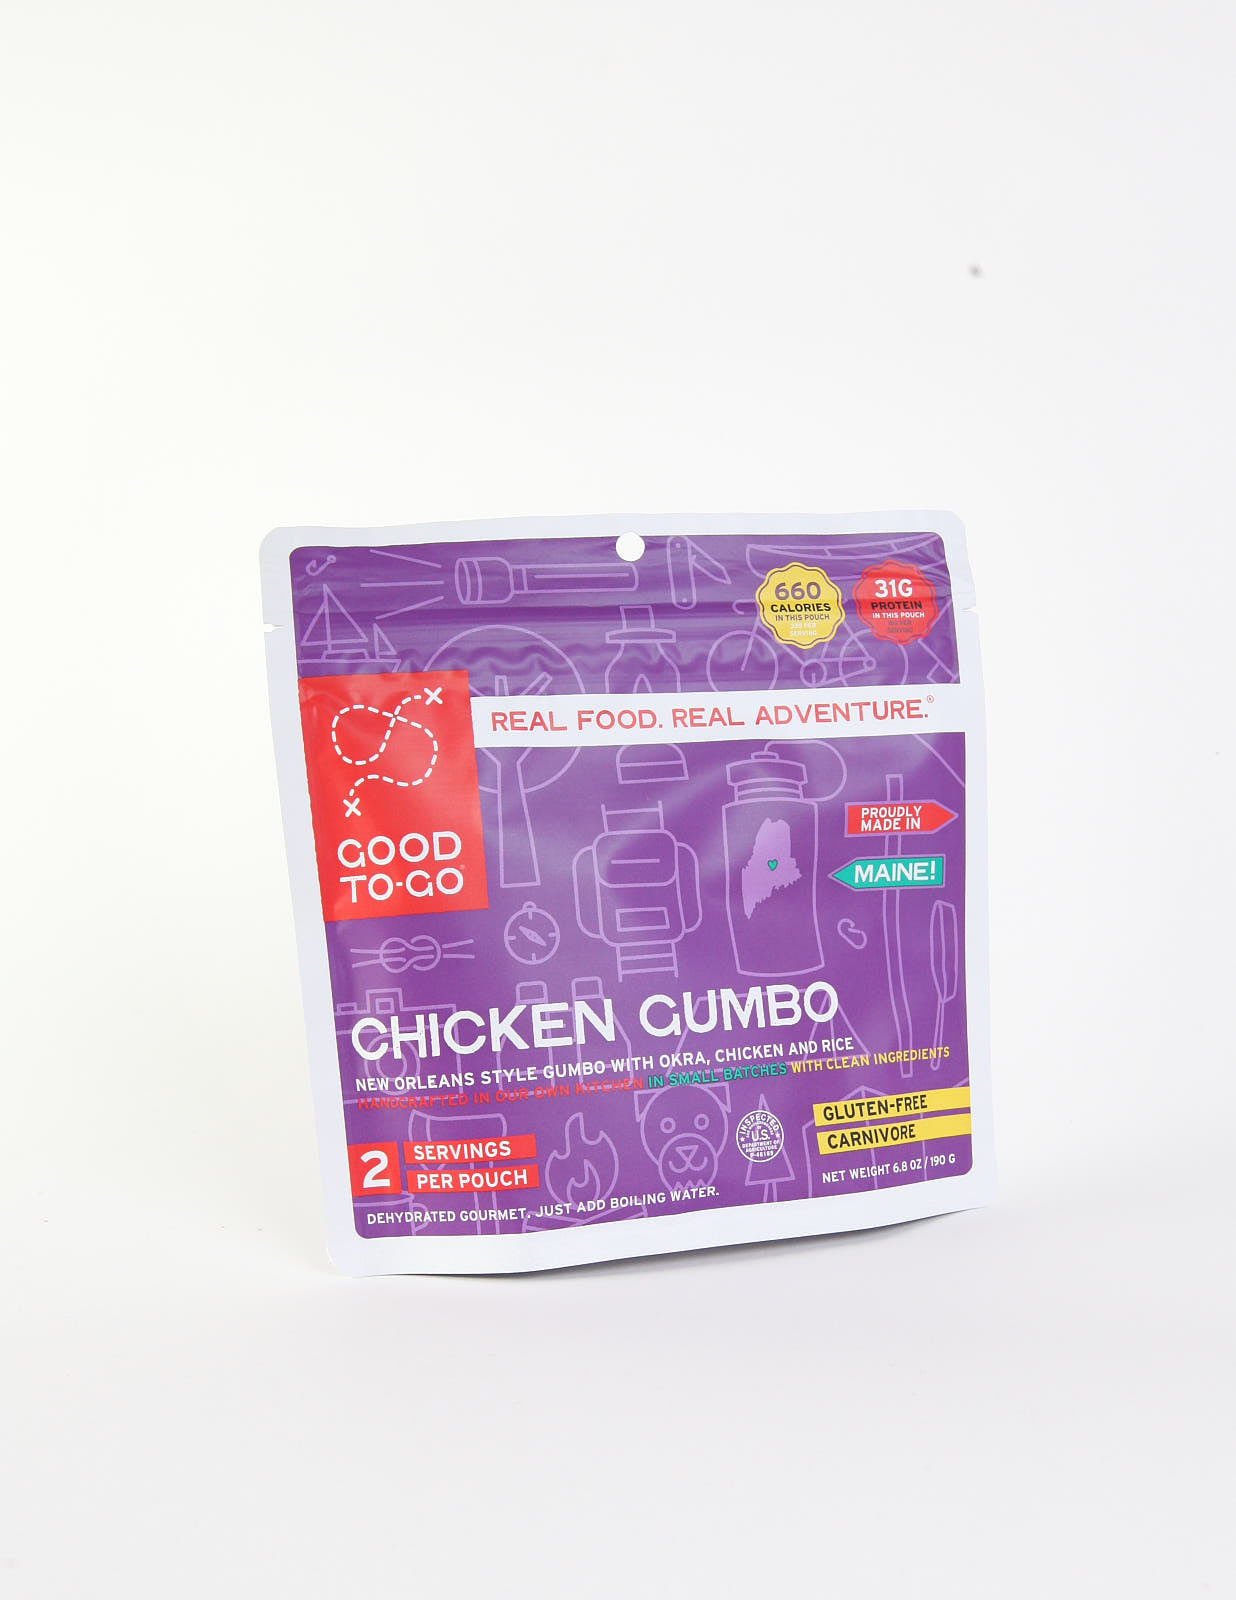 Chicken Gumbo - Double